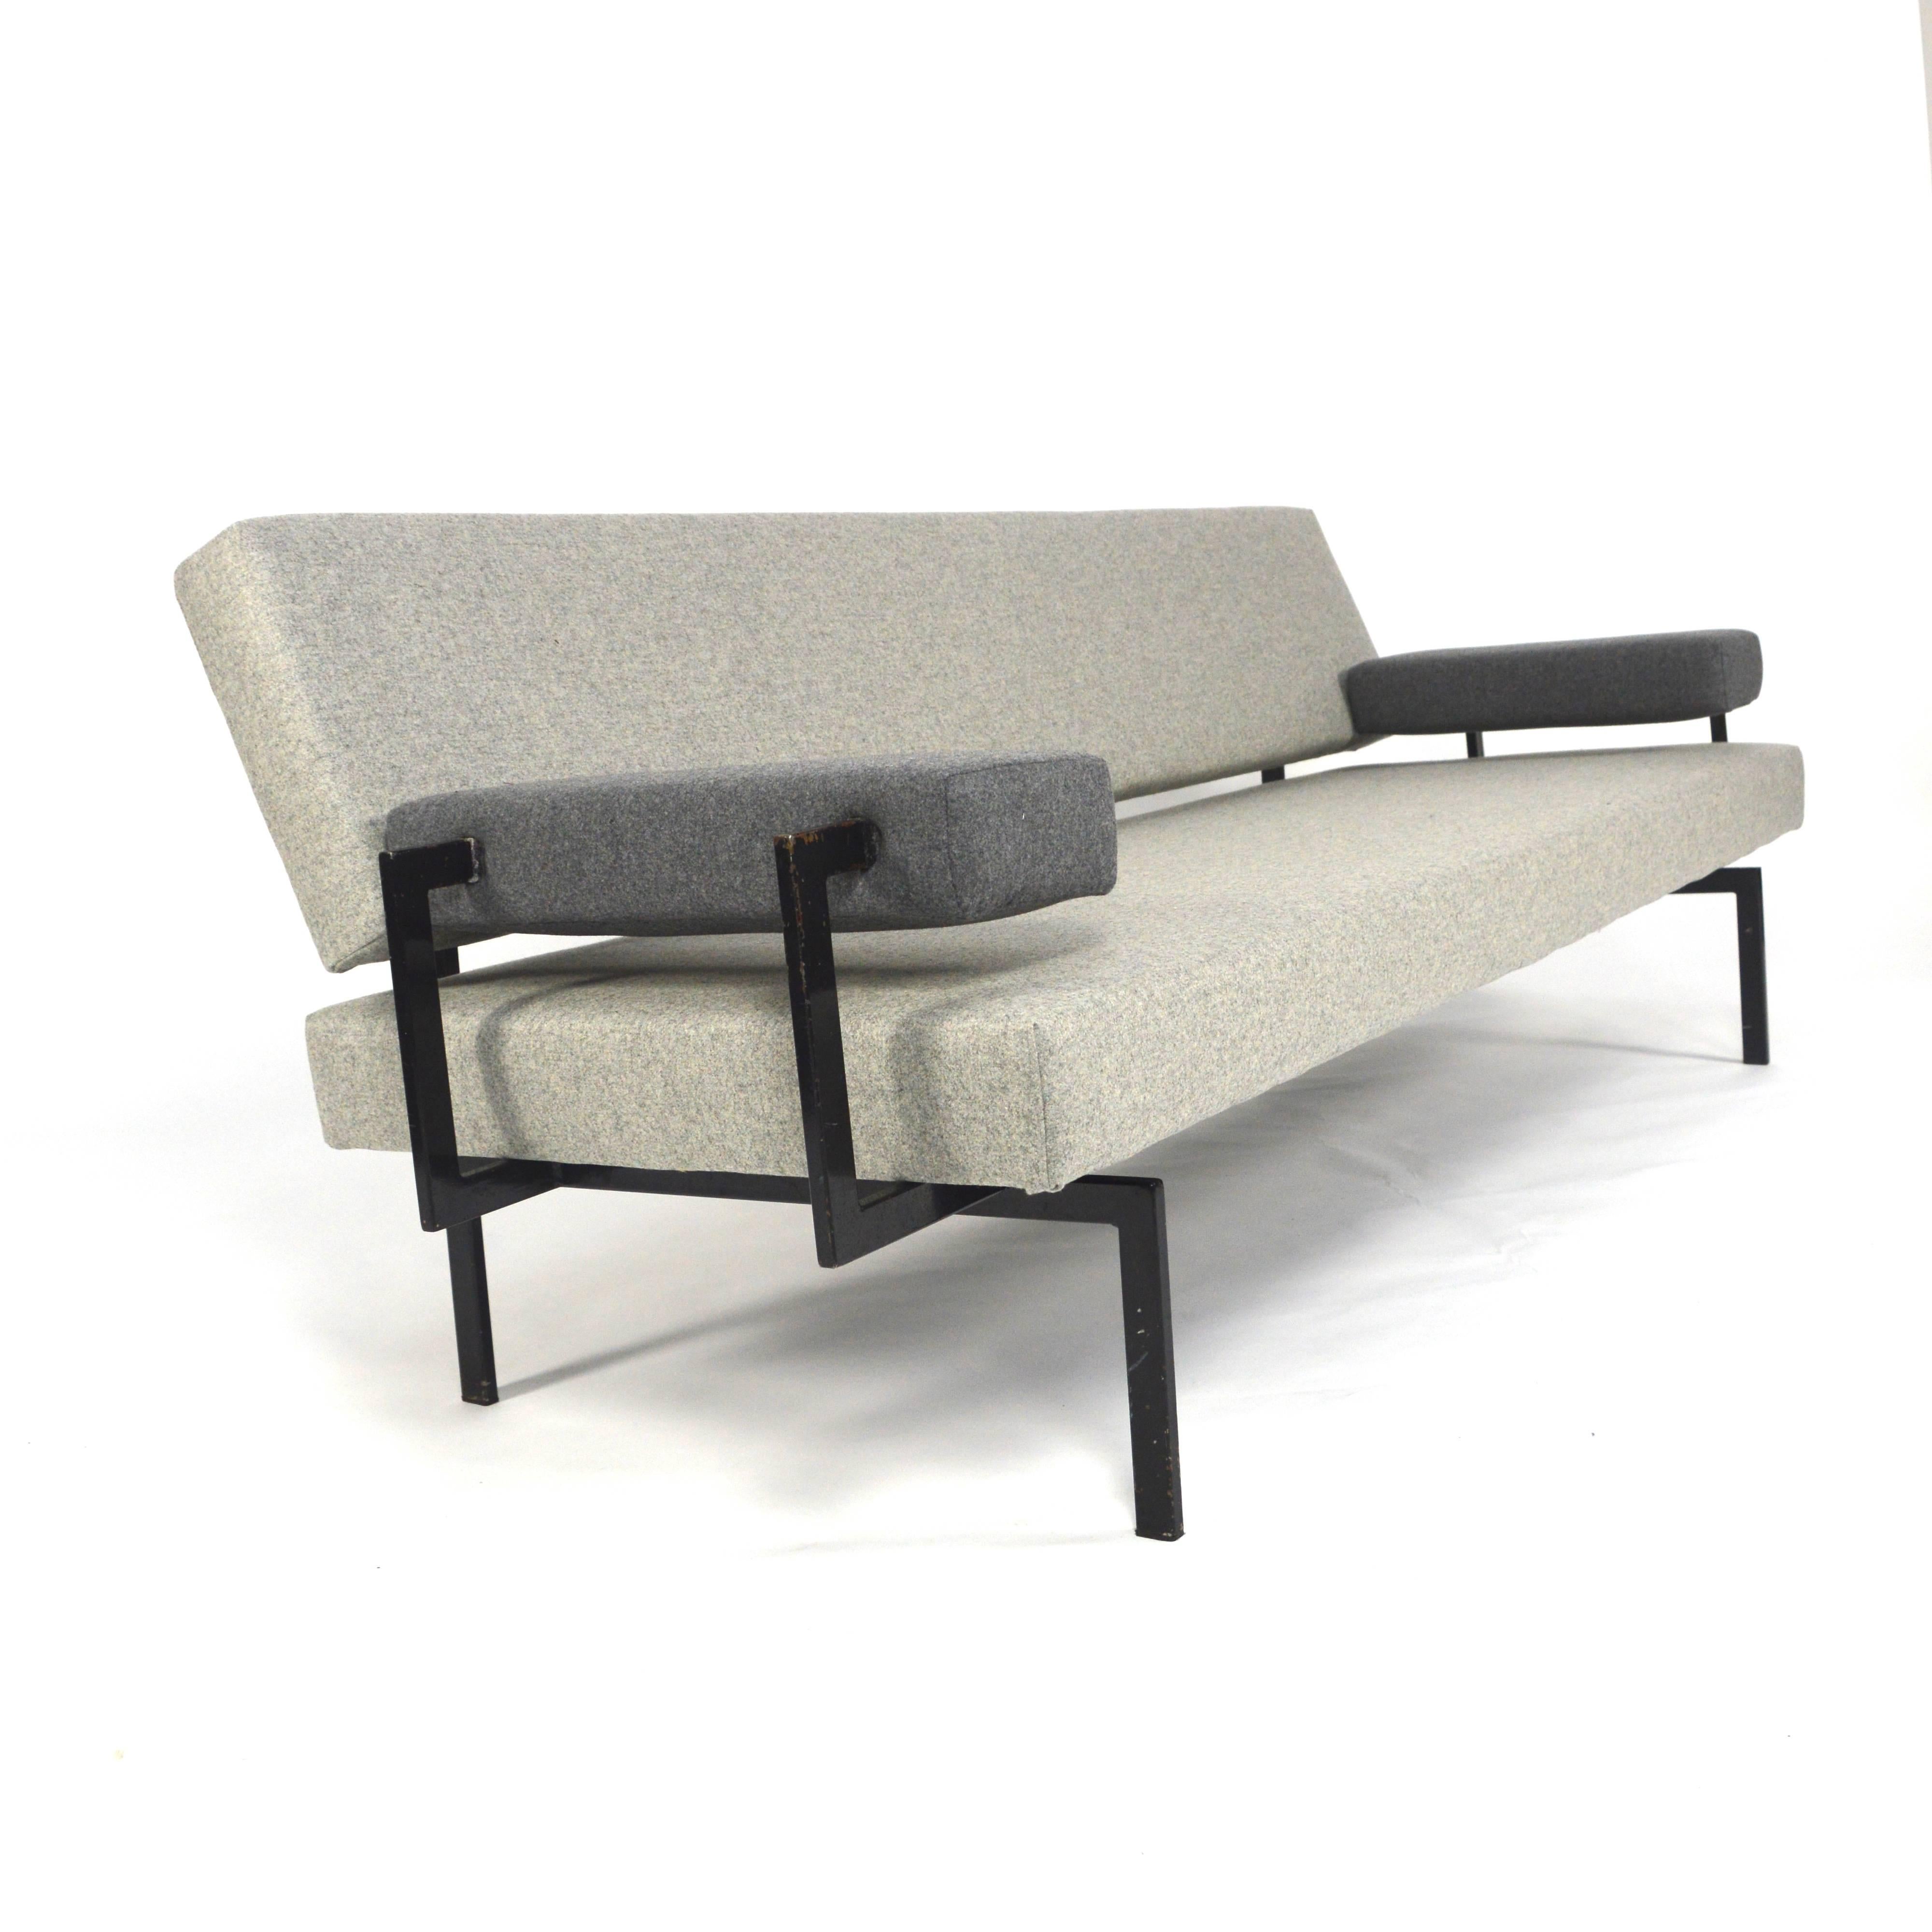 Dutch Cees Braakman for Pastoe U+N 'Japanese' Series Sofa, 1950s